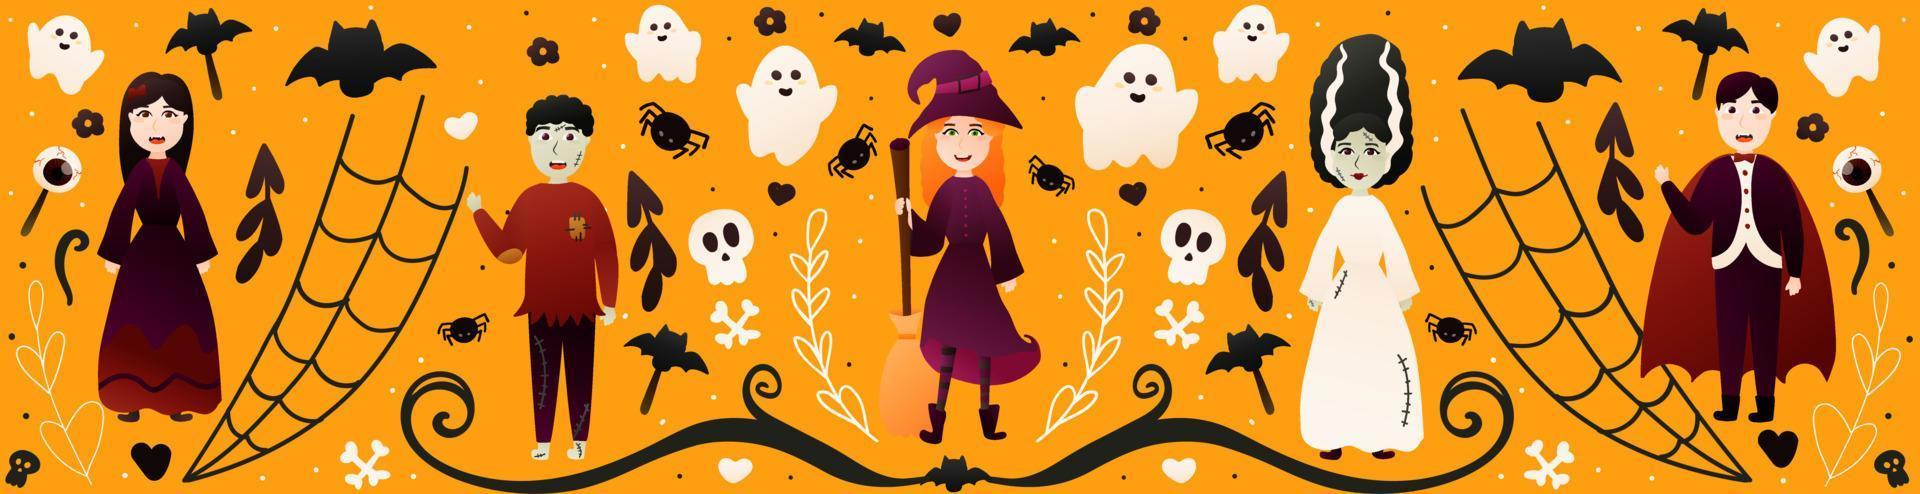 halloween baner med söt lock i annorlunda läskigt kostymer på orange bakgrund med fladdermöss, skallar och spindlar, horisontellt hälsning kort med vampyr, häxa och spöken i tecknad serie stil vektor